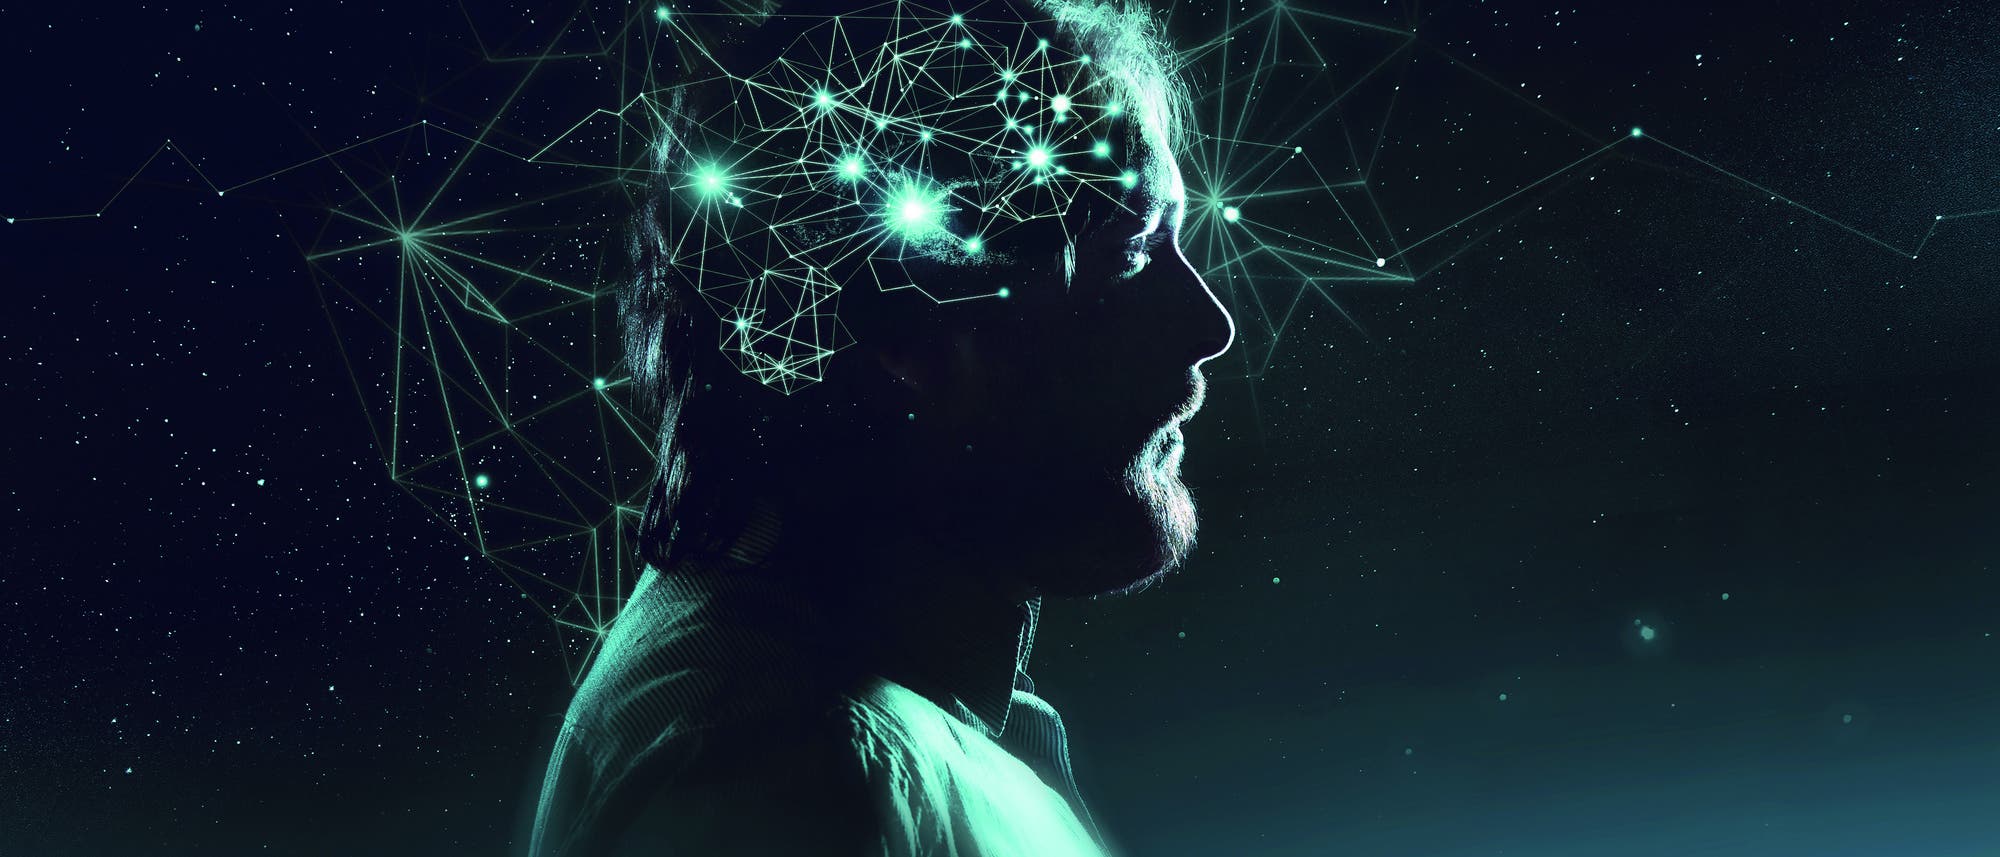 Profil eines Mannes mit symbolischen Neuronen leuchtend vor dunklem Hintergrund dargestellt.